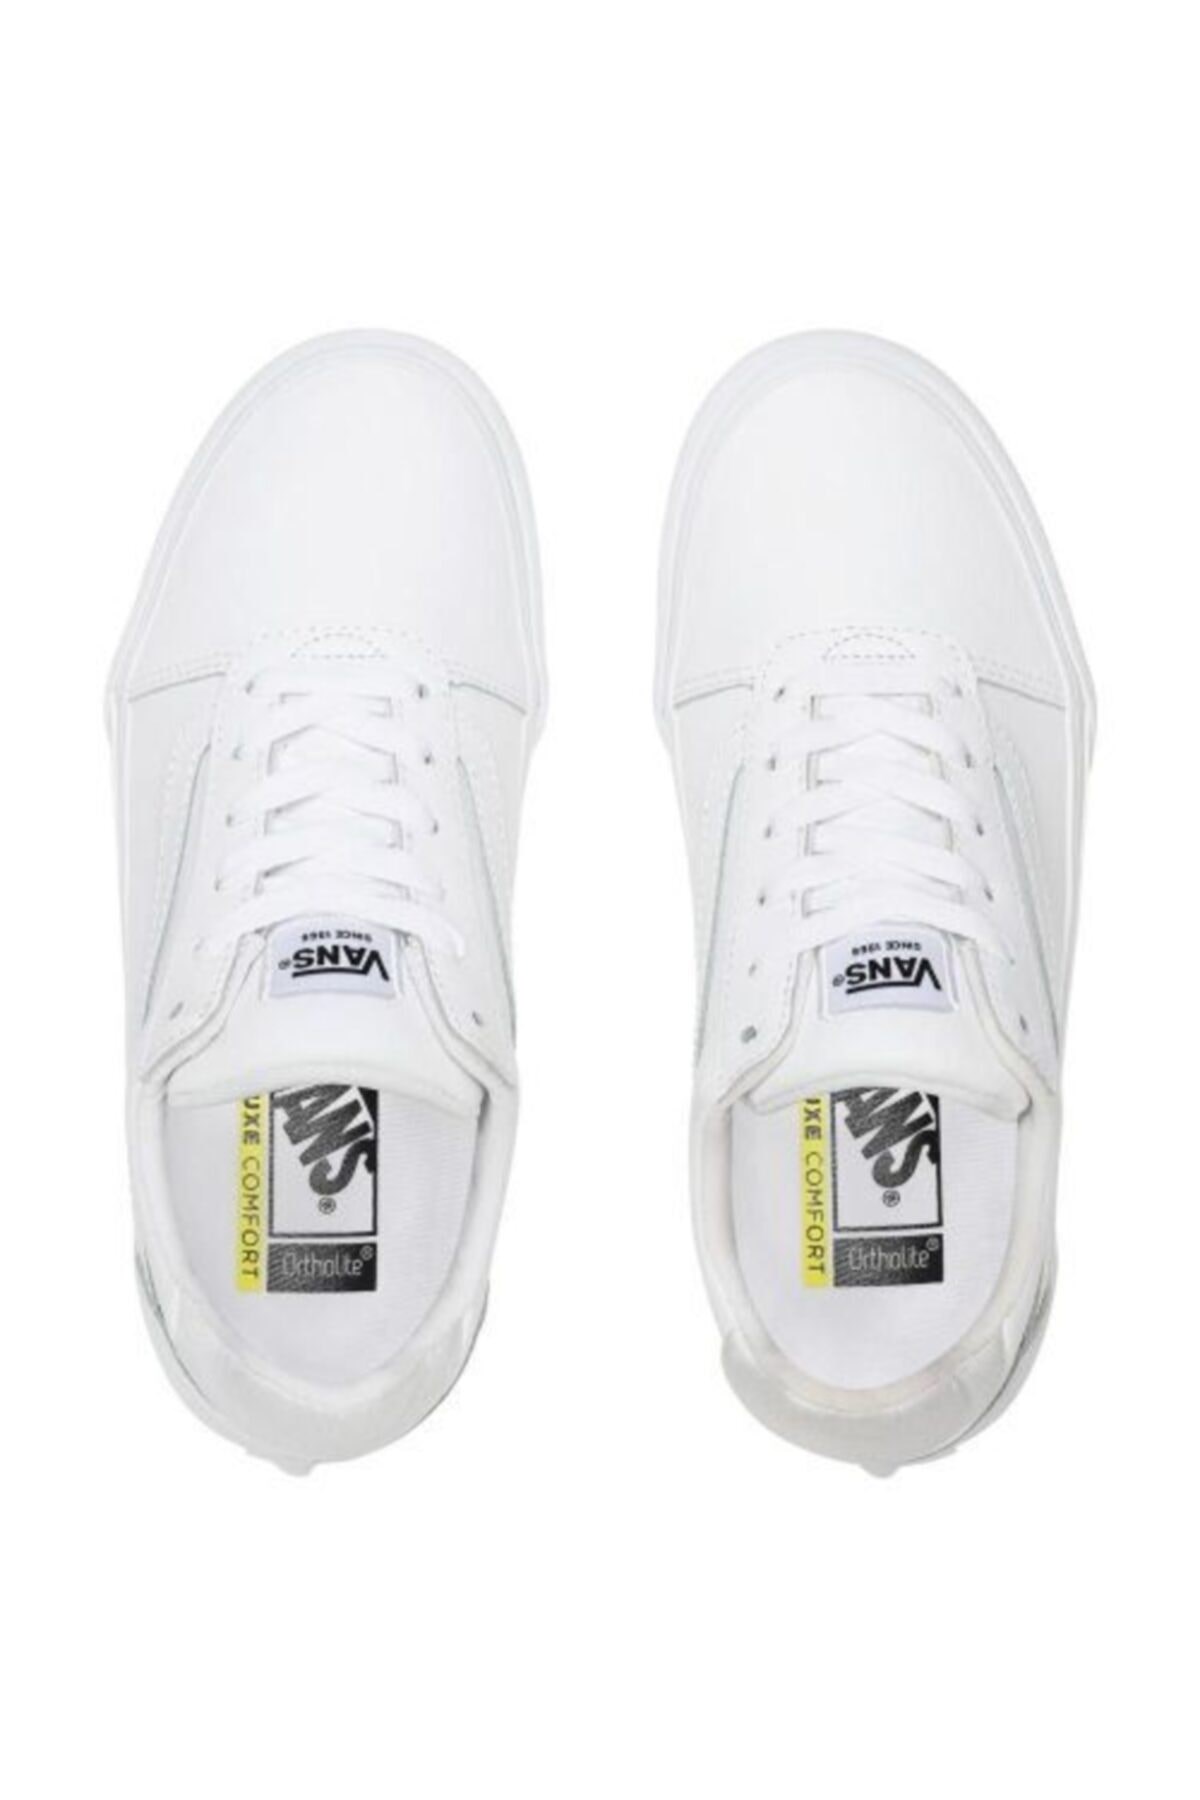 Vans Kadın Ayakkabı VN0A3TLA05R1 (Tumble) White/White